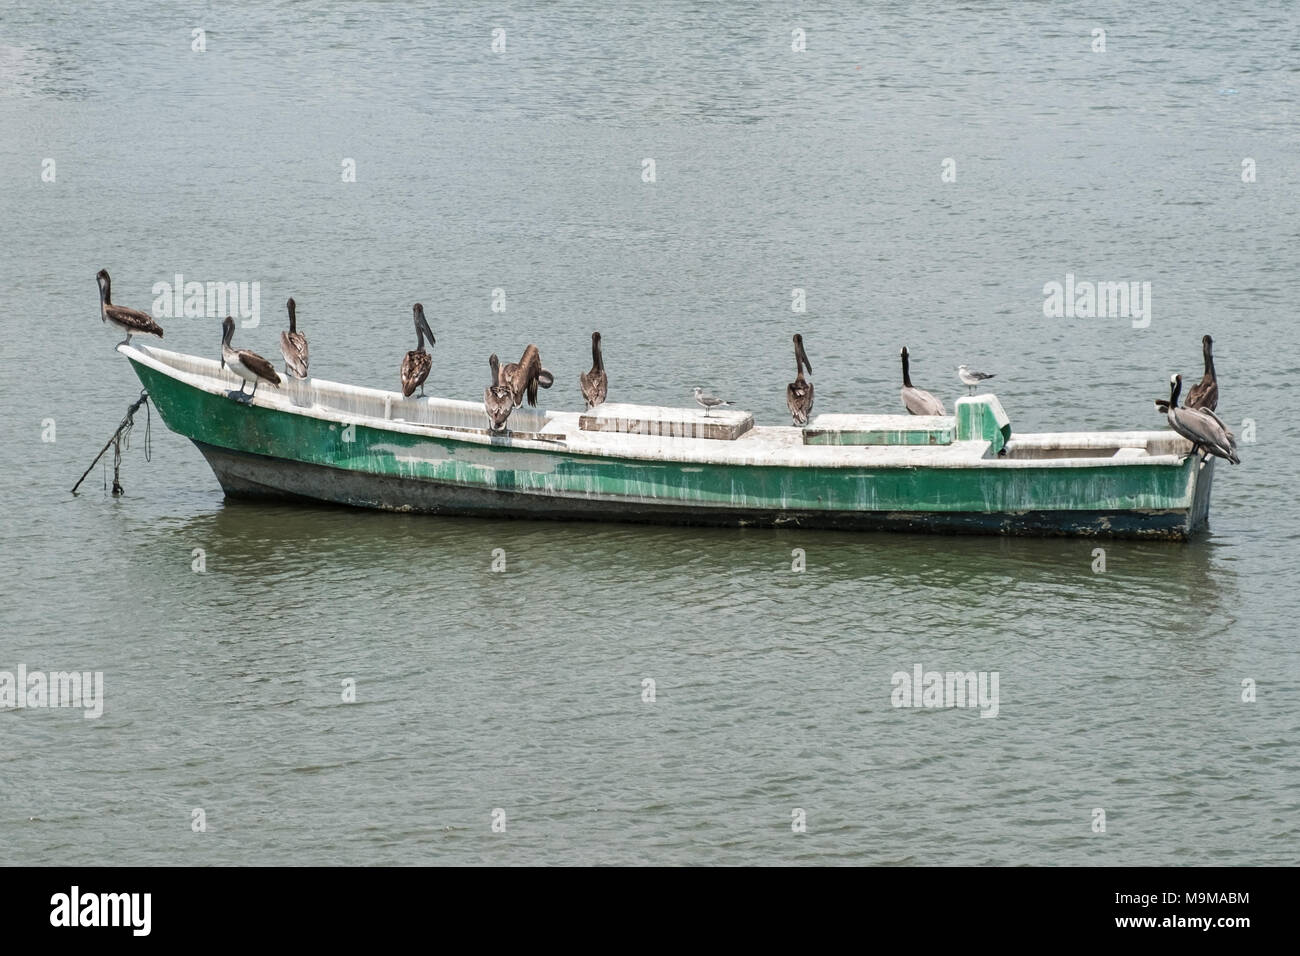 Gruppe von pelican Vögel auf Holz- Boot in der Nähe von Fischmarkt, Hafen - Stockfoto